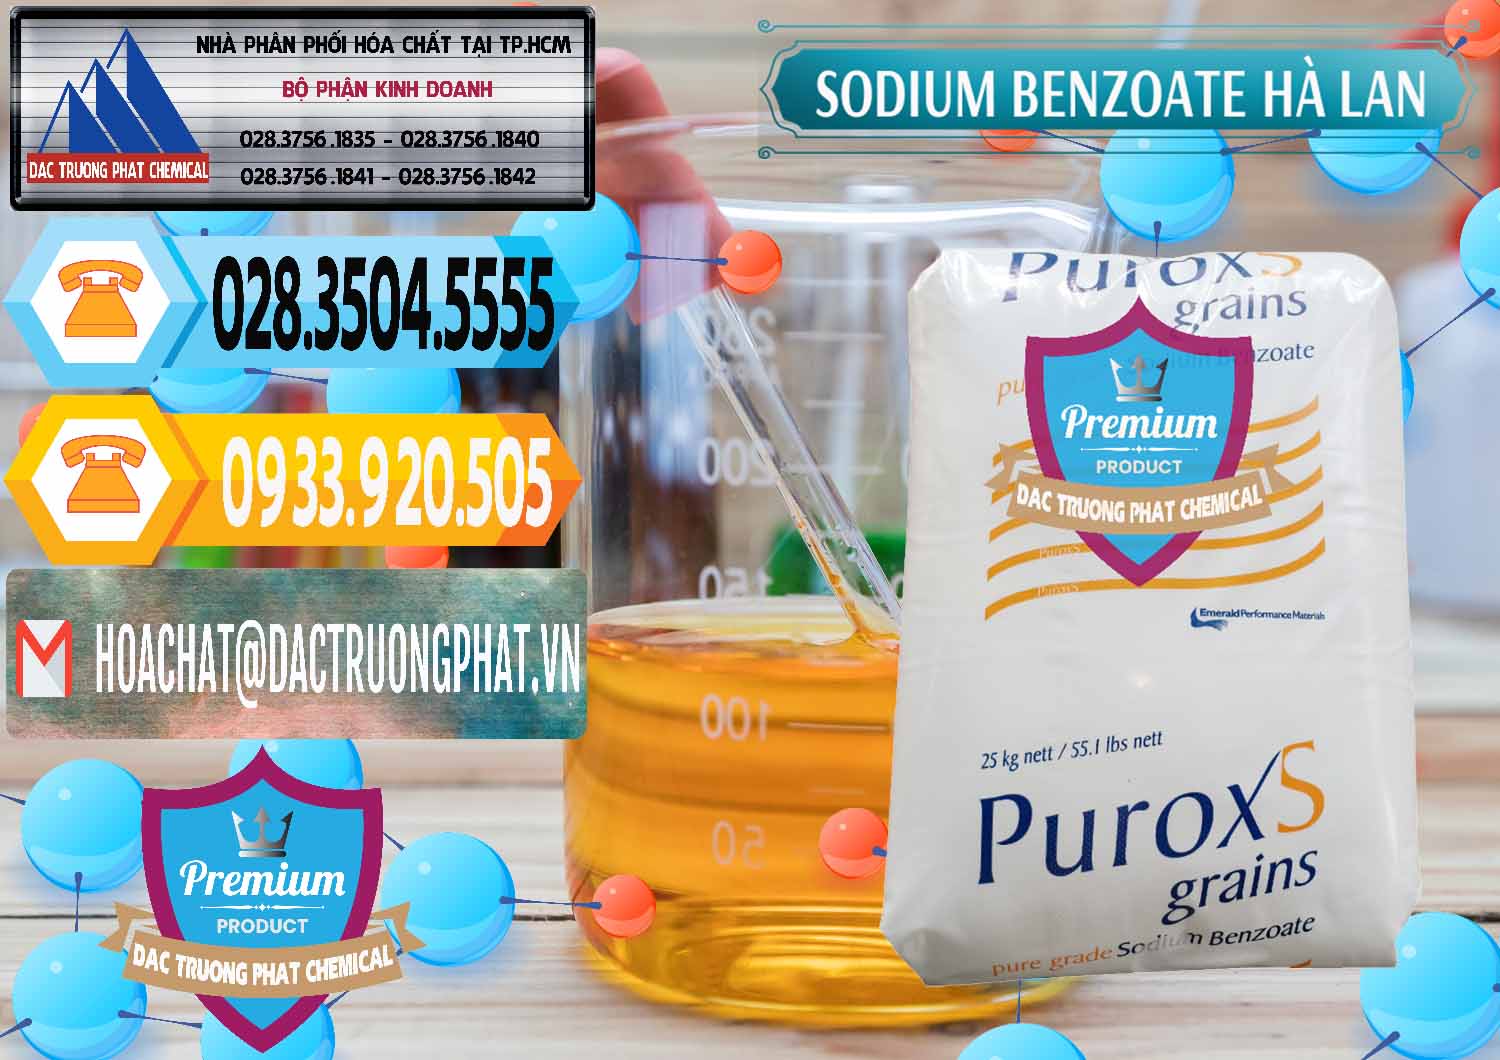 Cty chuyên bán _ cung ứng Sodium Benzoate - Mốc Bột Puroxs Hà Lan Netherlands - 0467 - Đơn vị nhập khẩu ( phân phối ) hóa chất tại TP.HCM - hoachattayrua.net